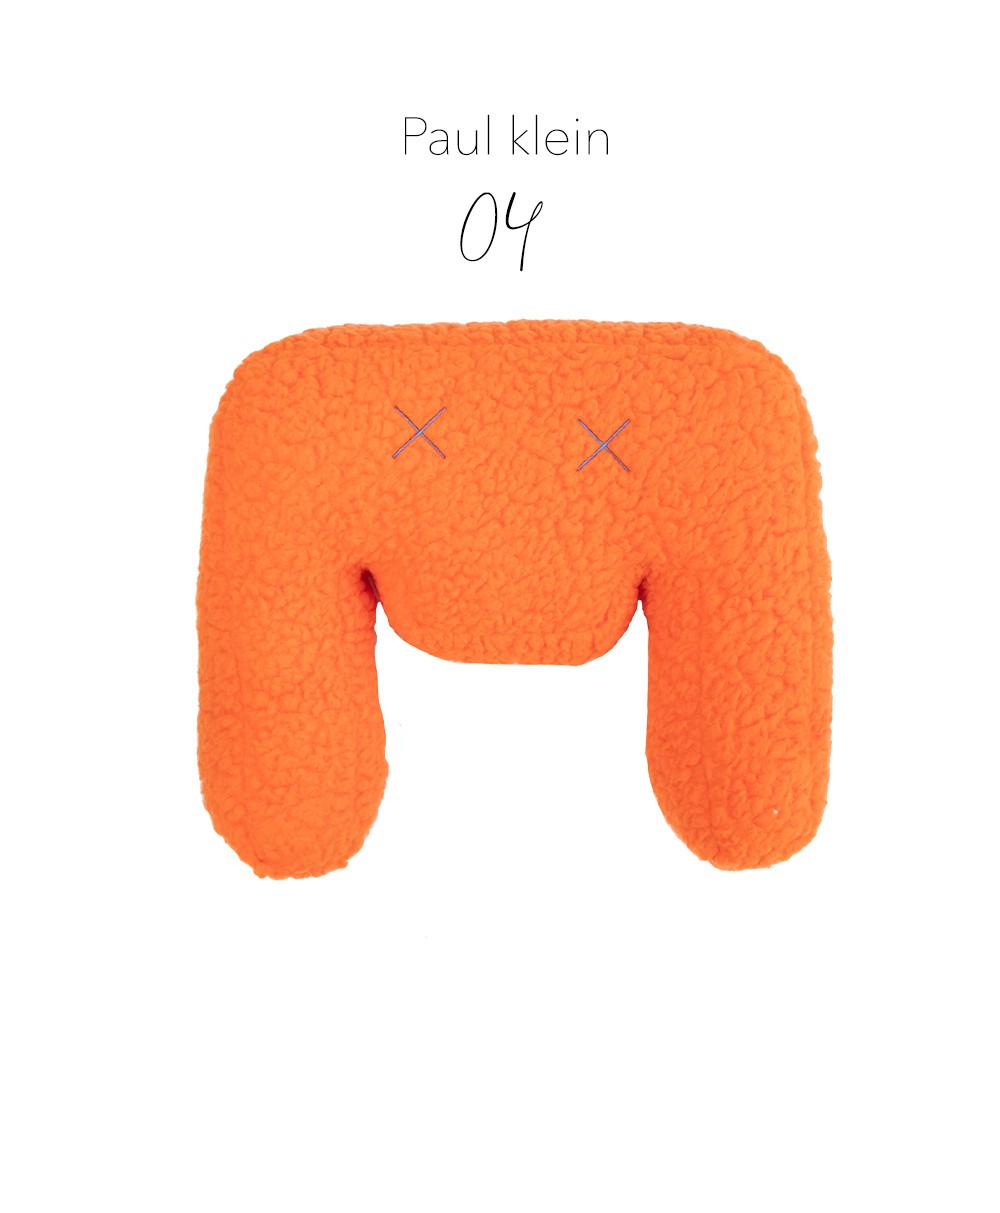 Produktbild des "Monster Paul klein"  des Herstellers LPJ im RAUM Conceptstore